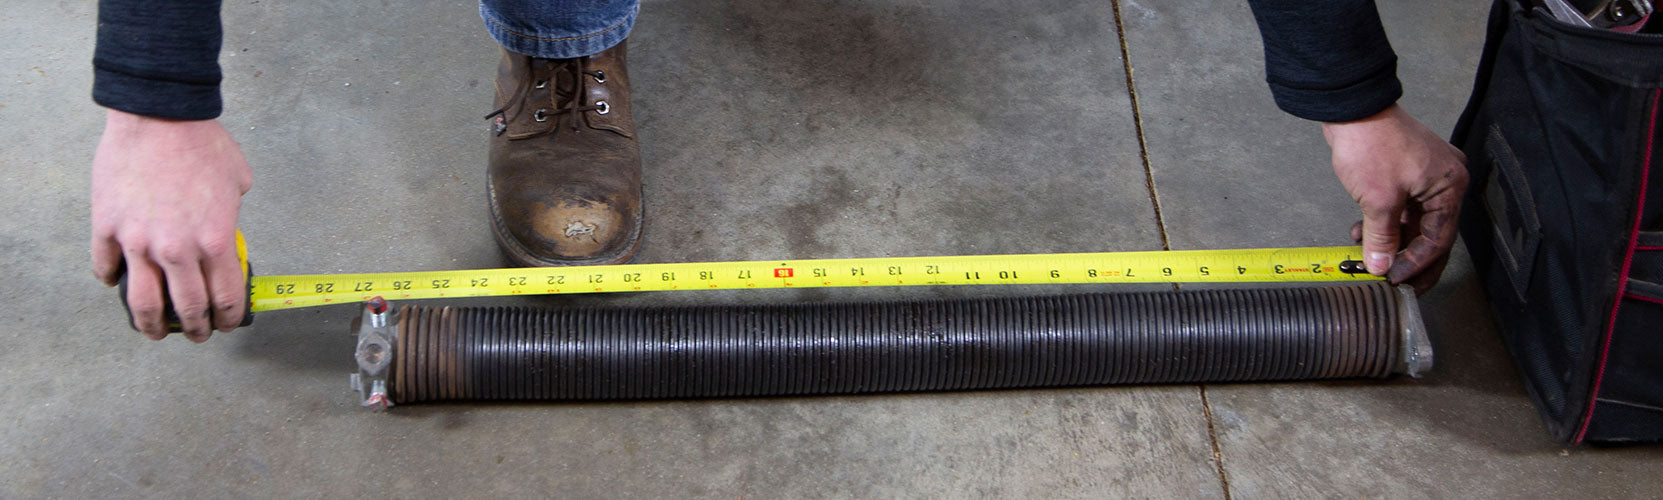 How to Measure Garage Door Torsion Springs